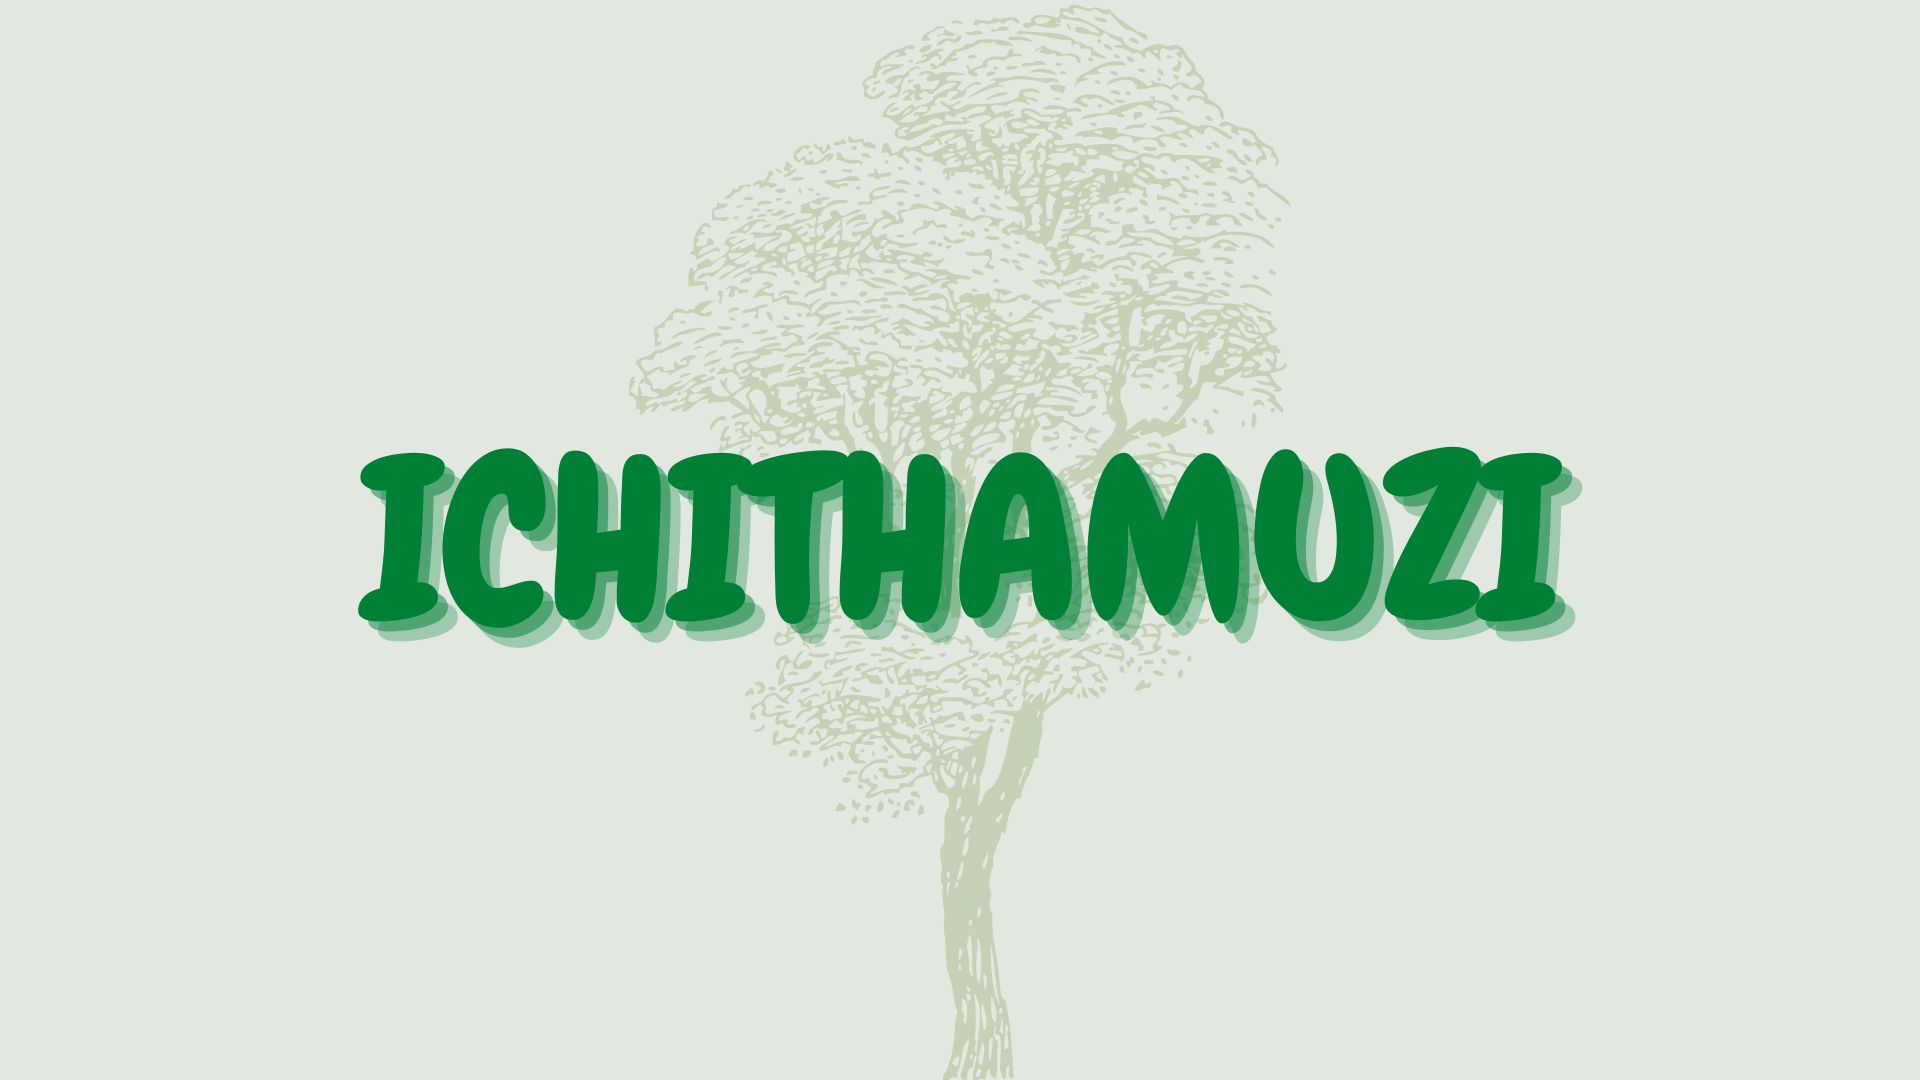 ichithamuzi